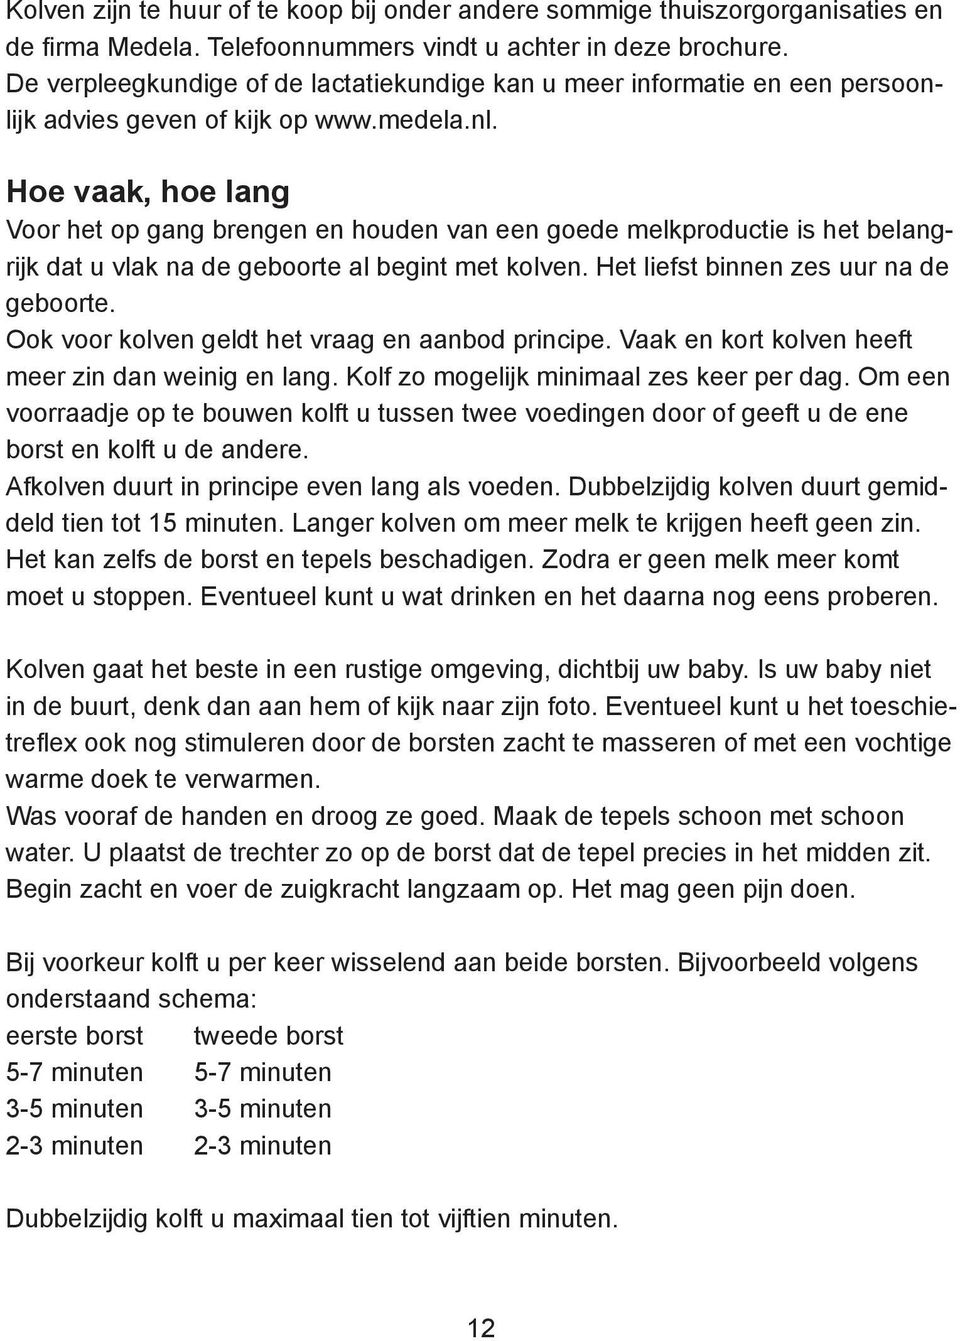 borstvoedingnatuurlijk.nl Stichting Zorg voor Borstvoeding WHO / Unicef Postbus 2047 2930 AA Krimpen aan de Lek tel.